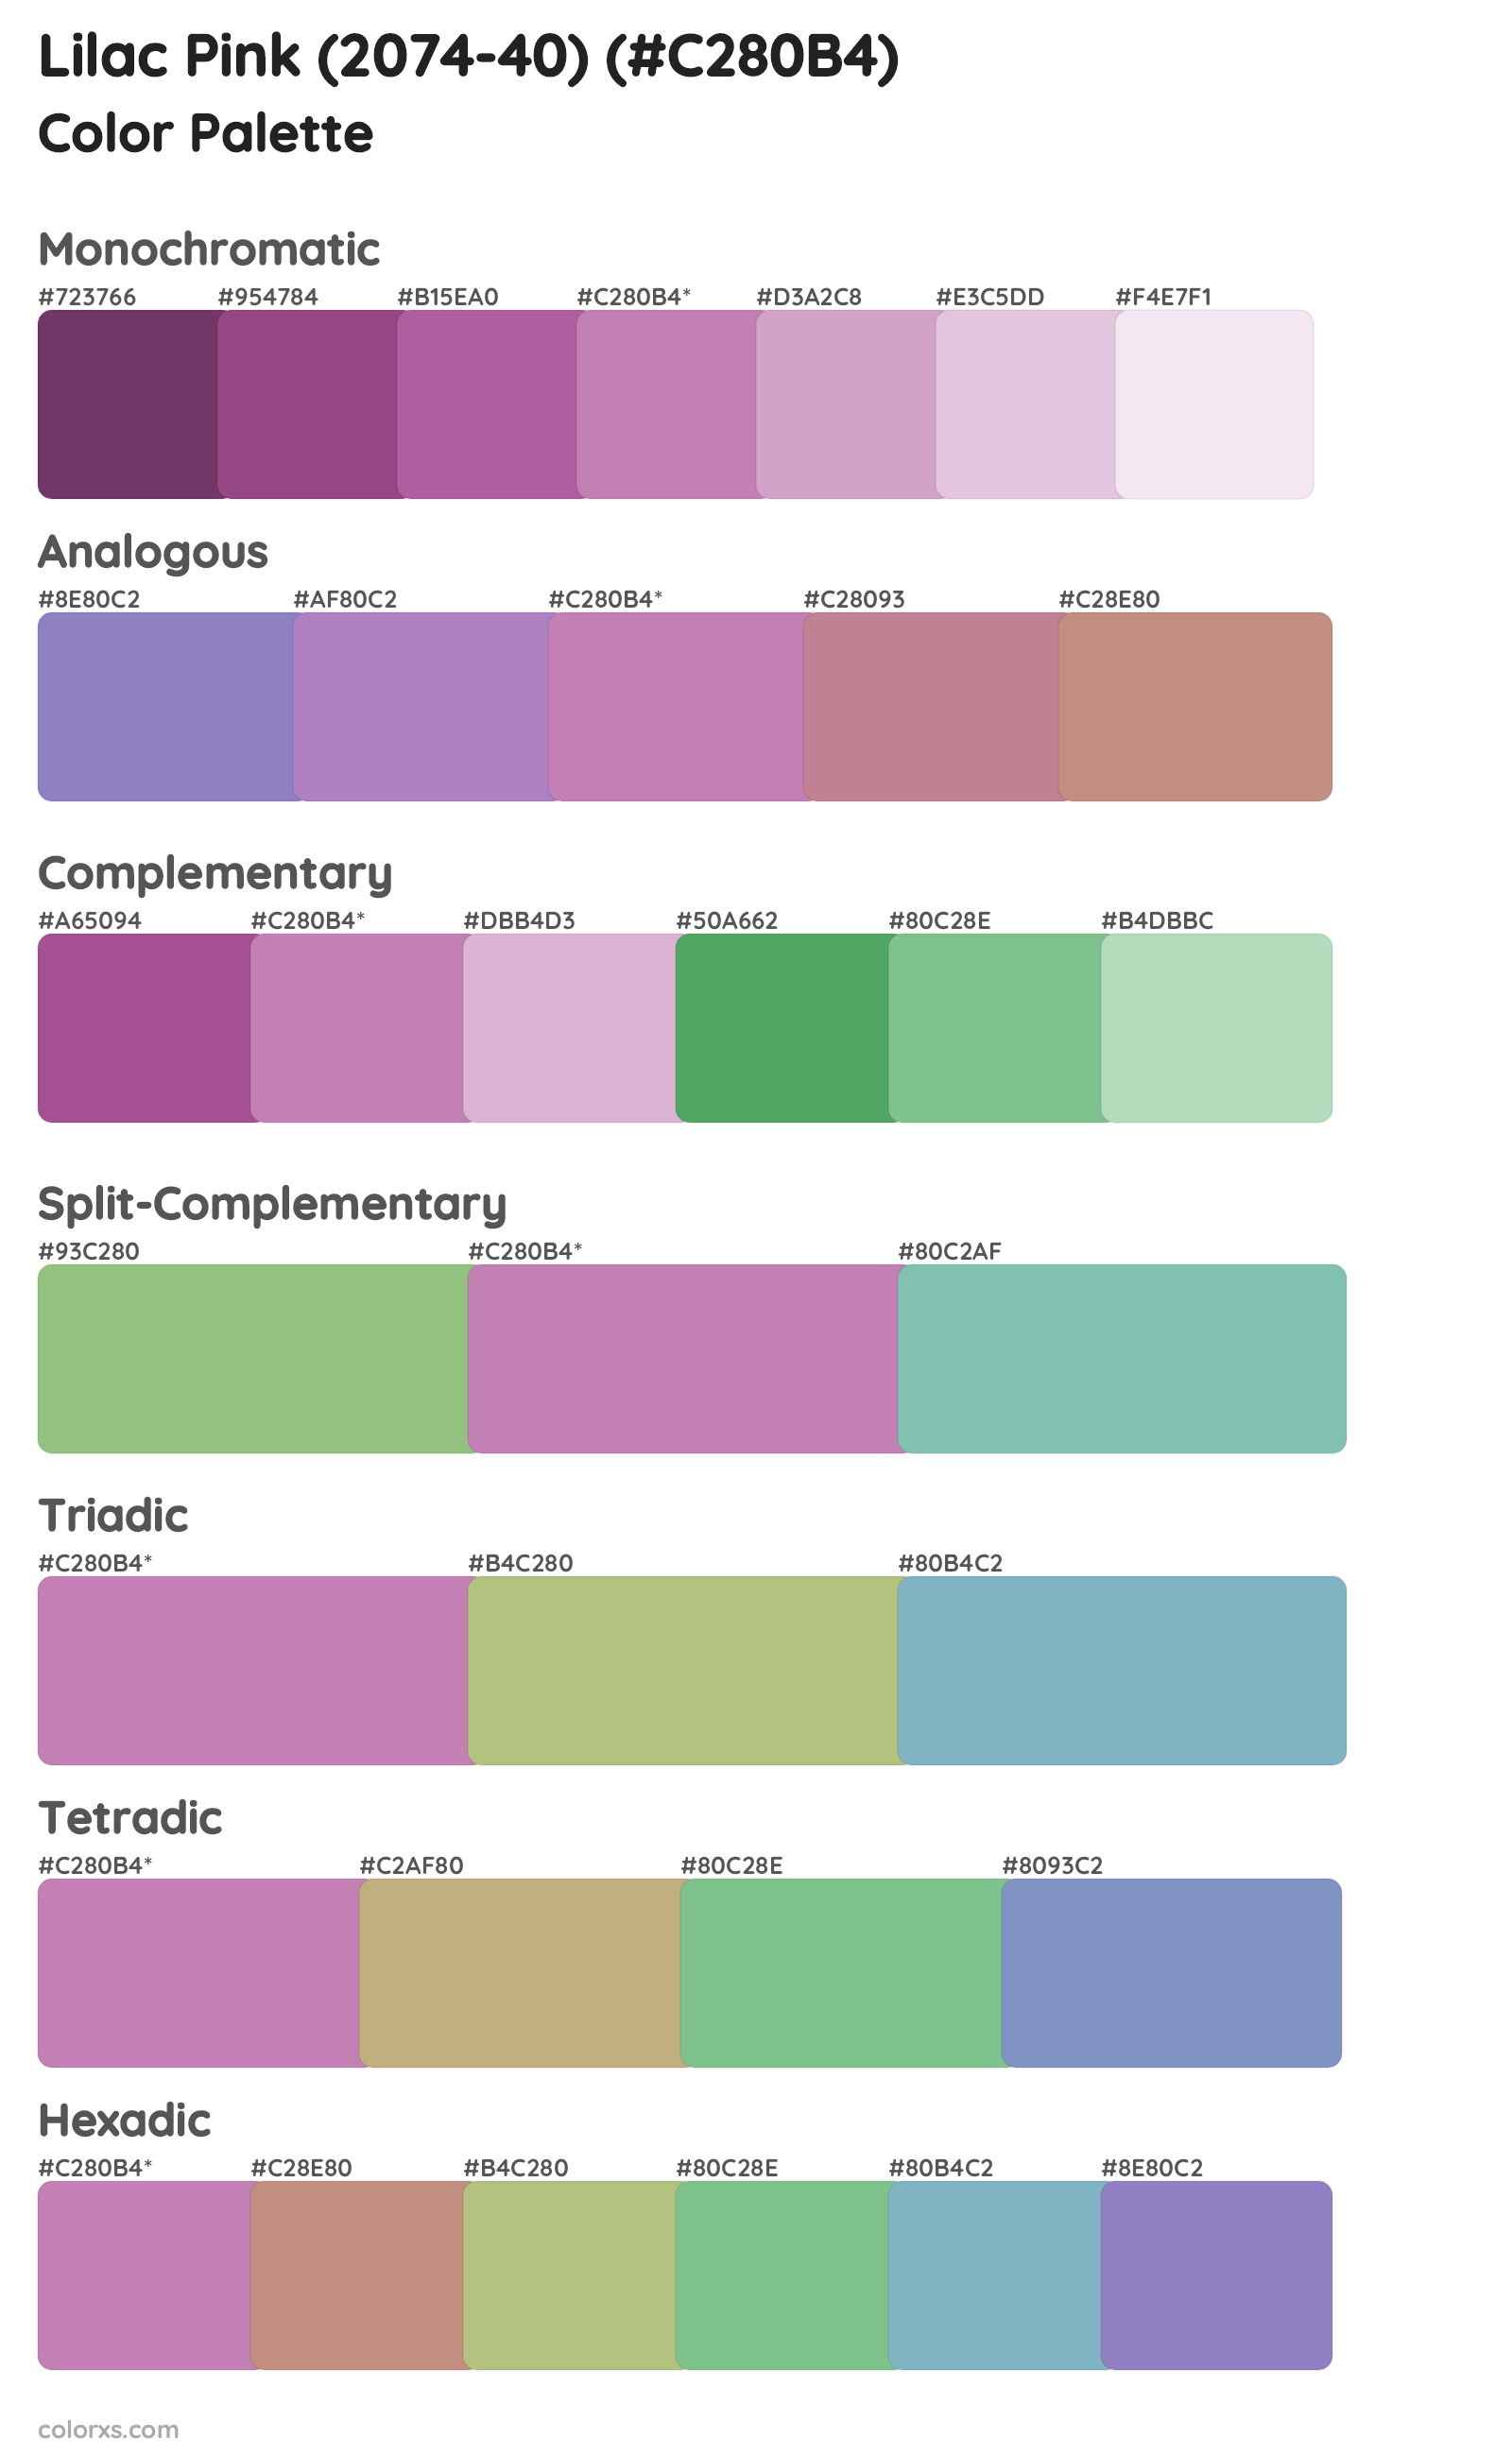 Lilac Pink (2074-40) Color Scheme Palettes